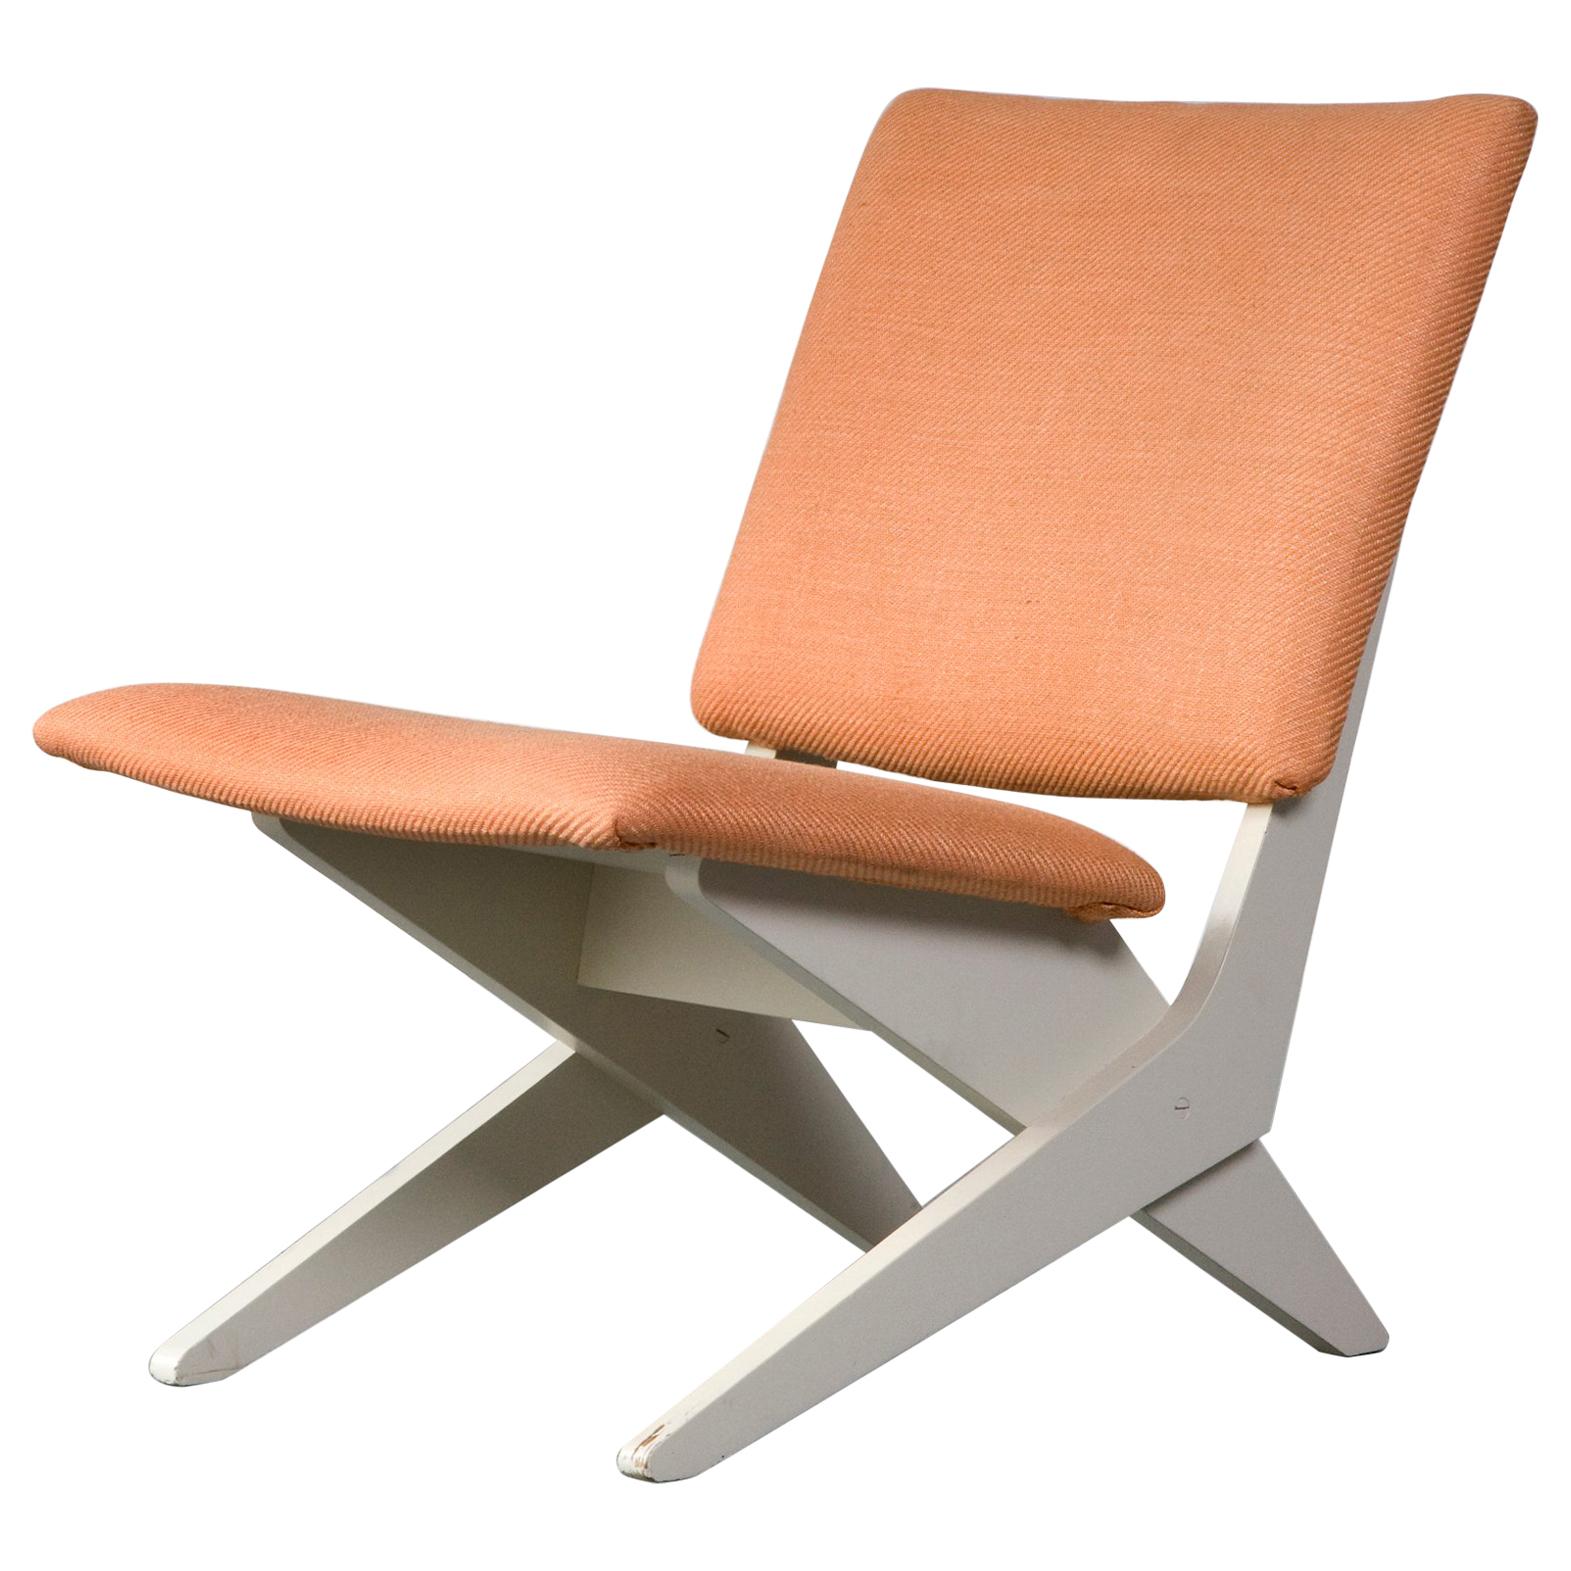 Upholstered Chair on Sculptural Plywood Bae by Peter van Grunsven, 1958